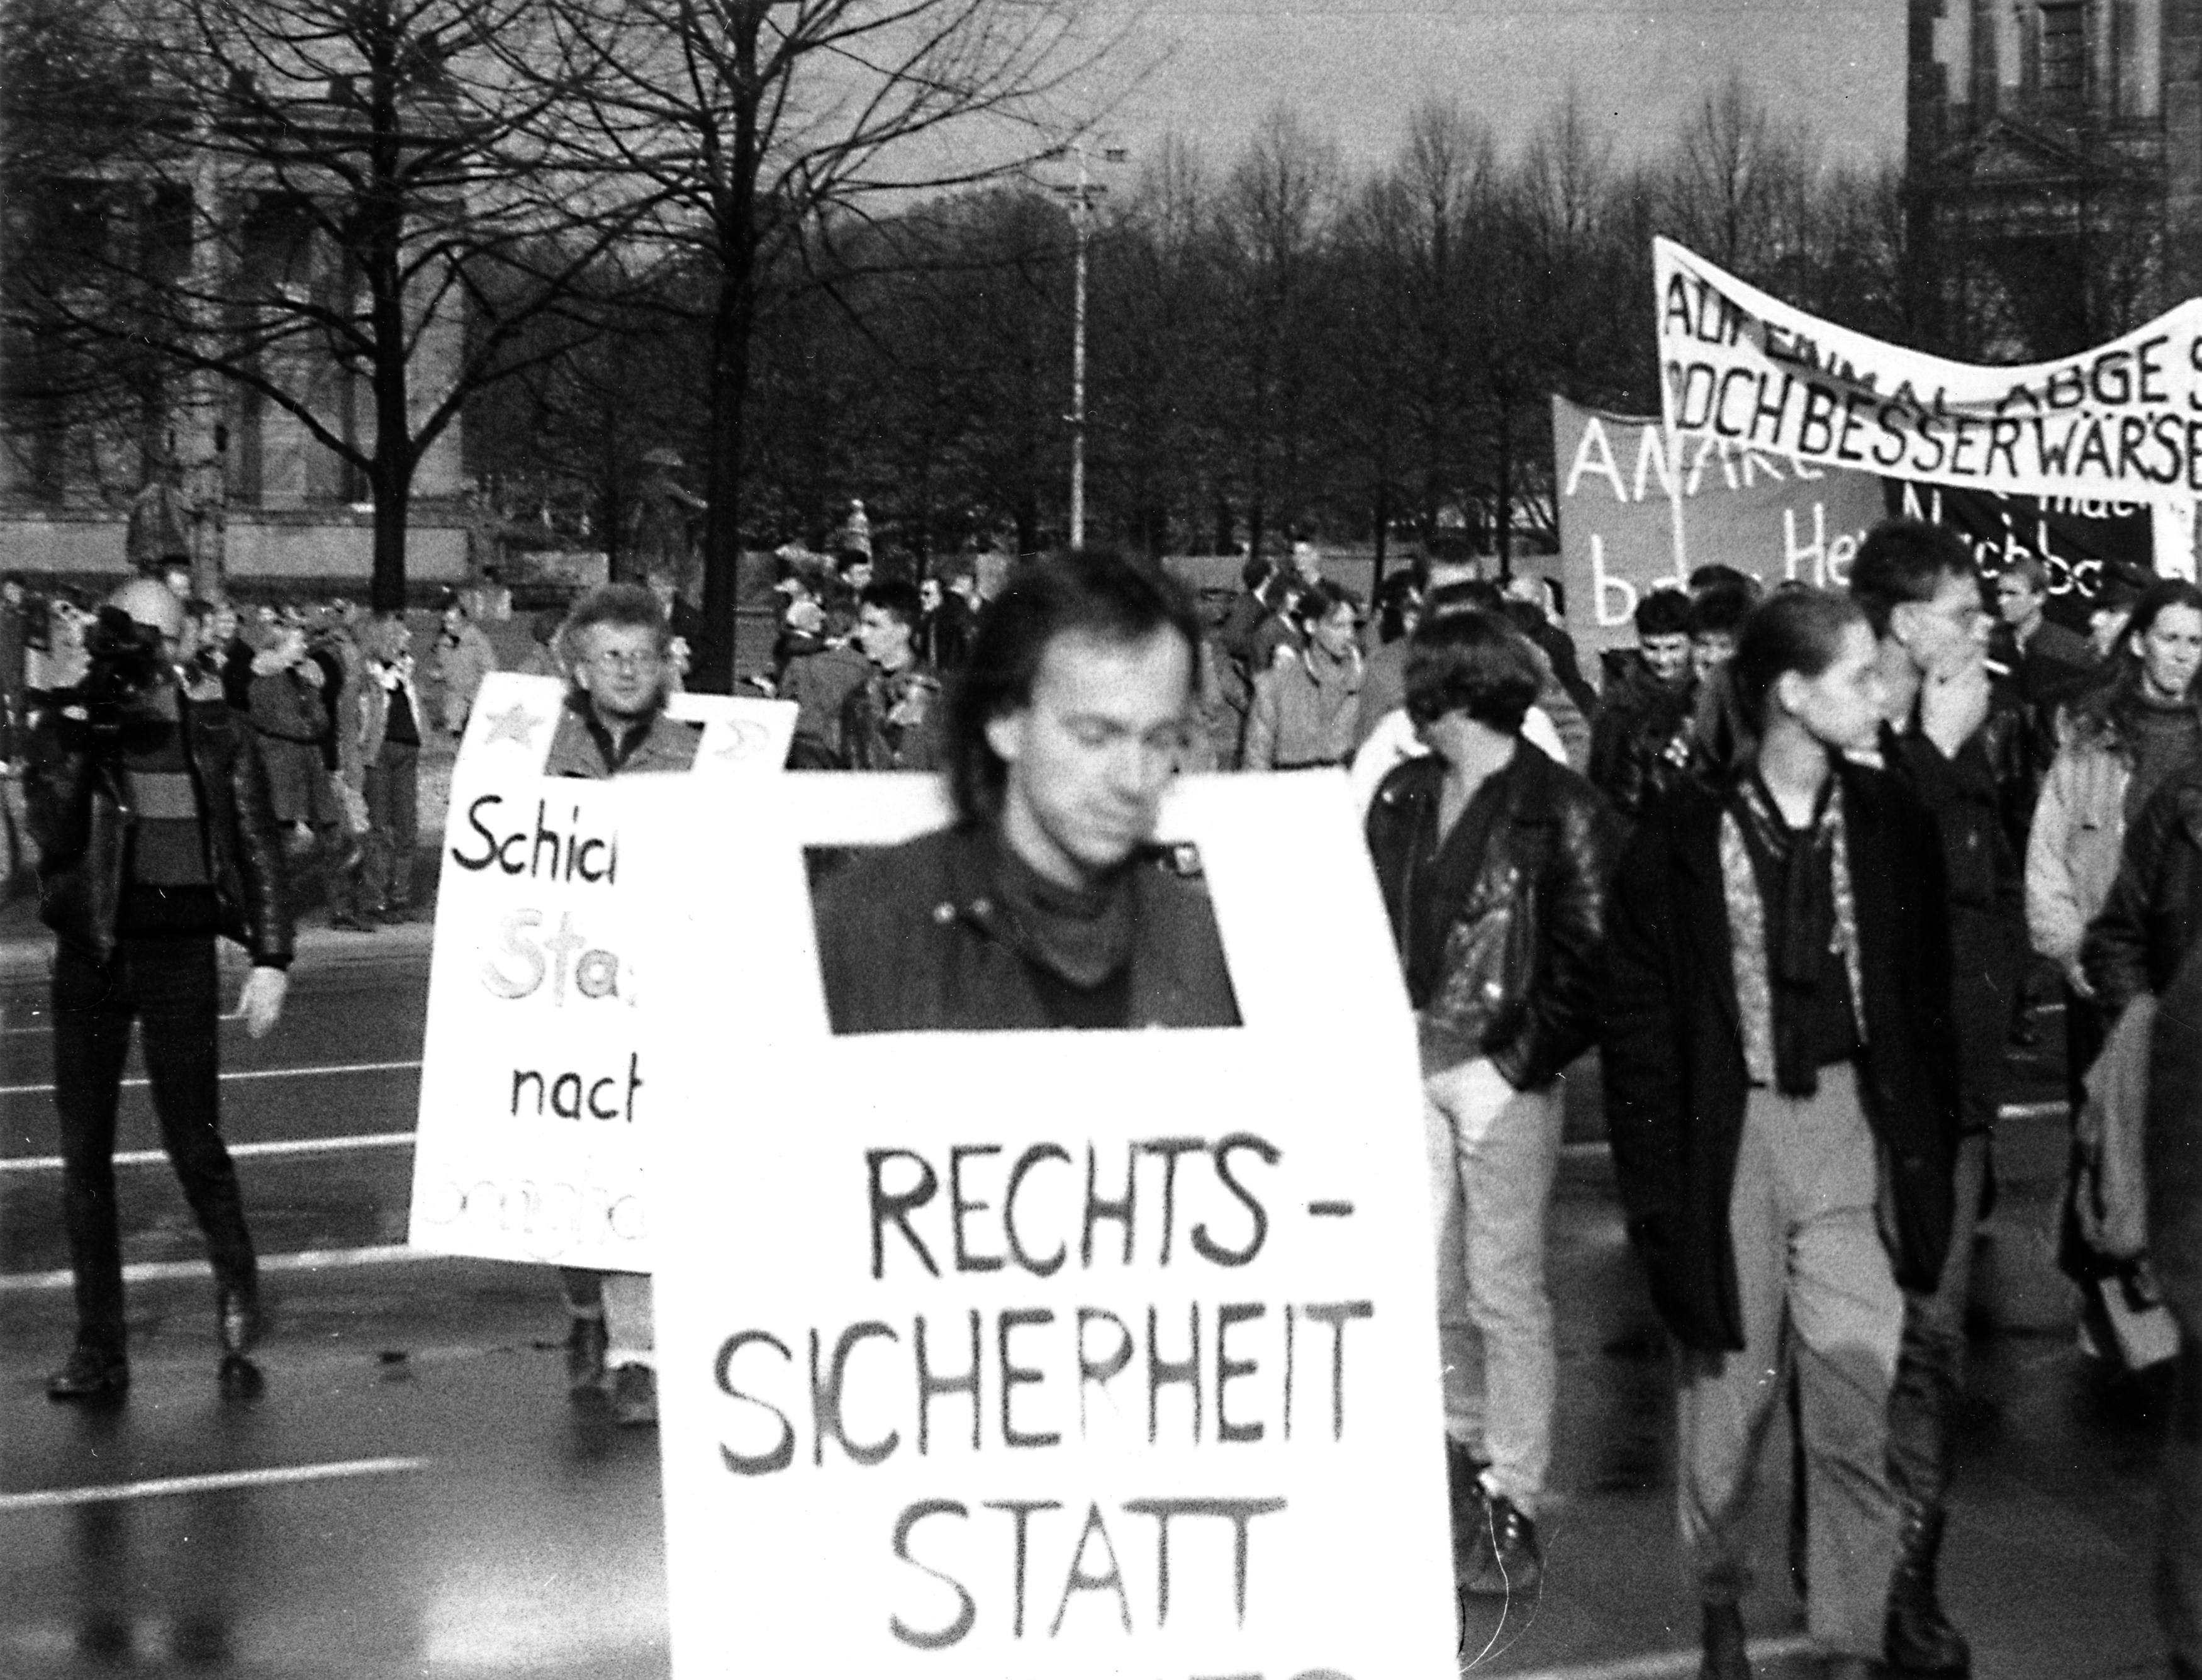 Demonstranten mit Transparenten und Plakaten. Vorne im Bild trägt ein Mann ein Transparent, worauf der Anfang des Schriftzuges "Rechtssicherheit statt" lesbar ist.